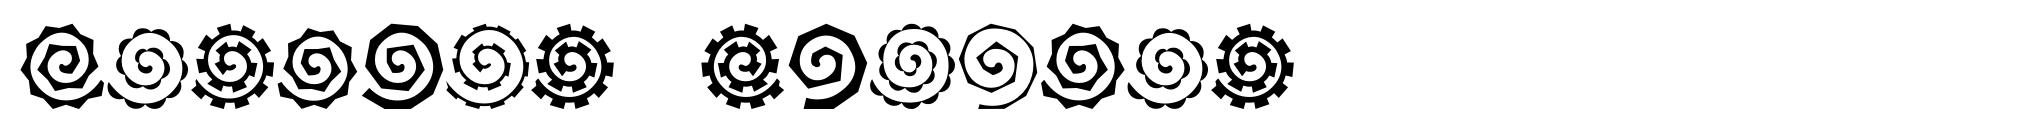 Altemus Spirals image